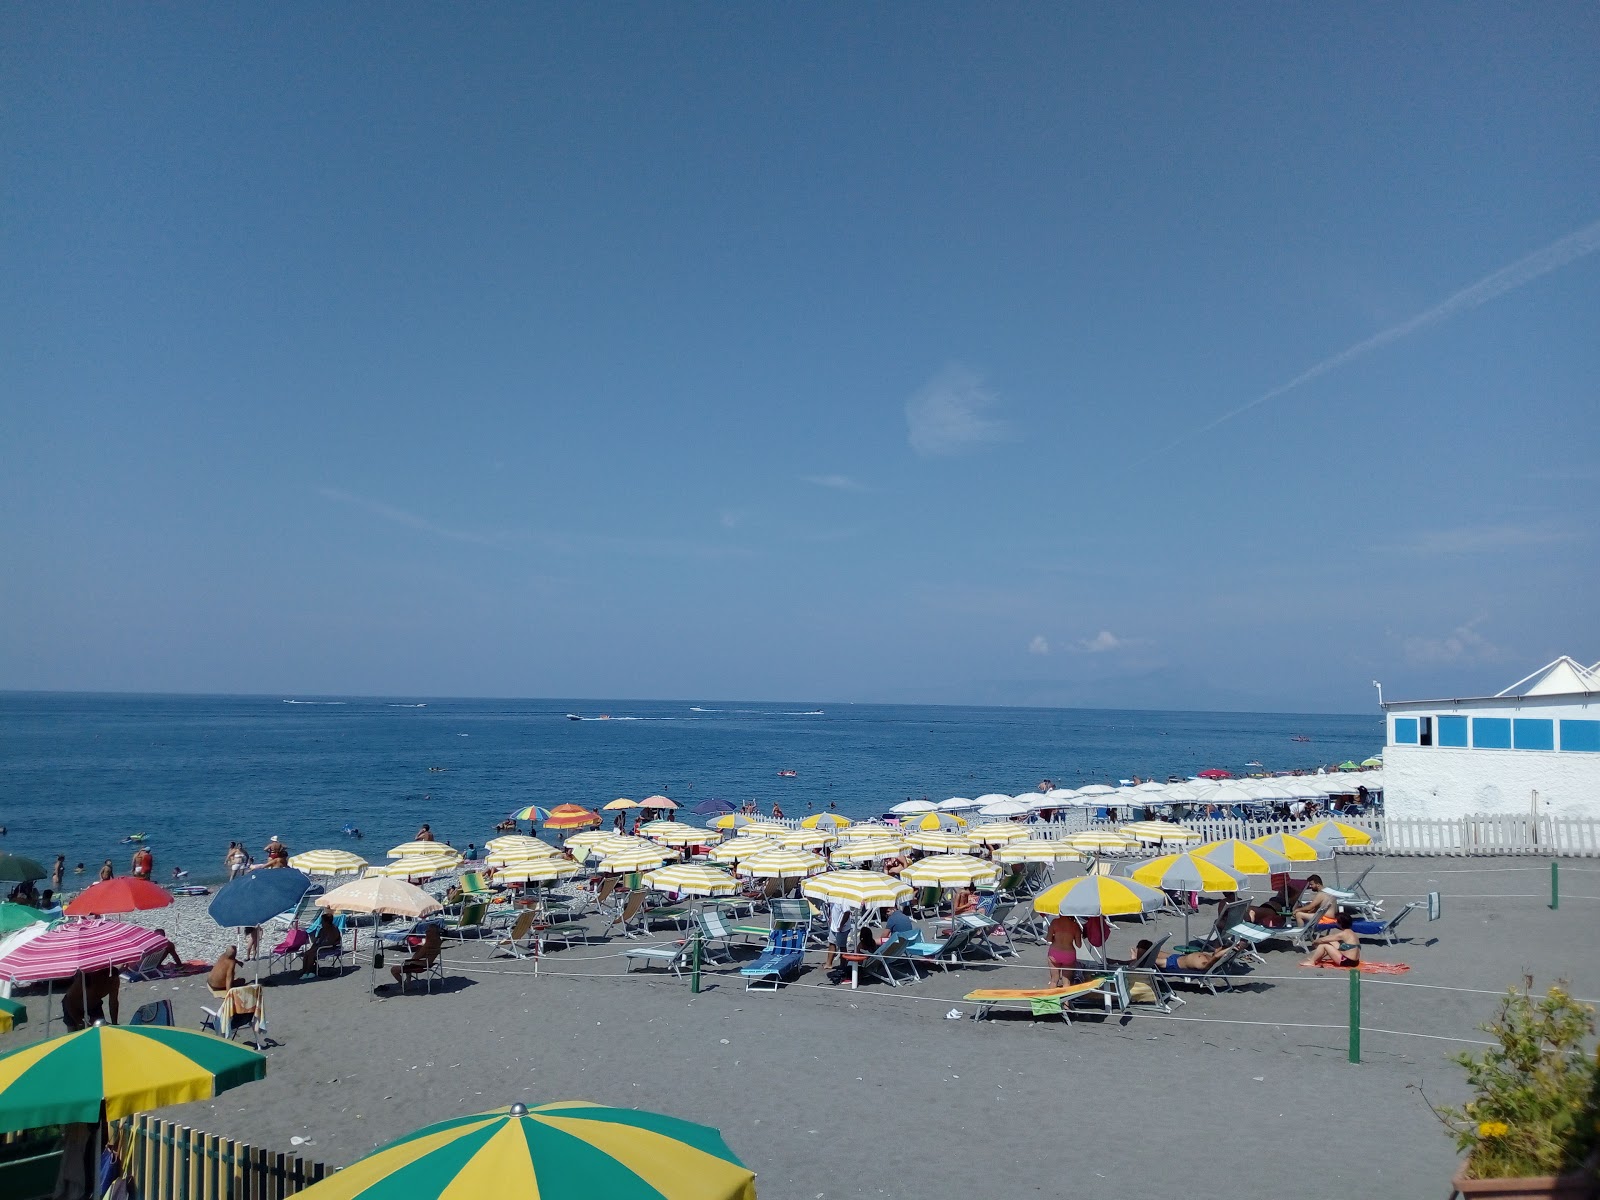 Foto von Spiaggia di Tortora mit langer gerader strand